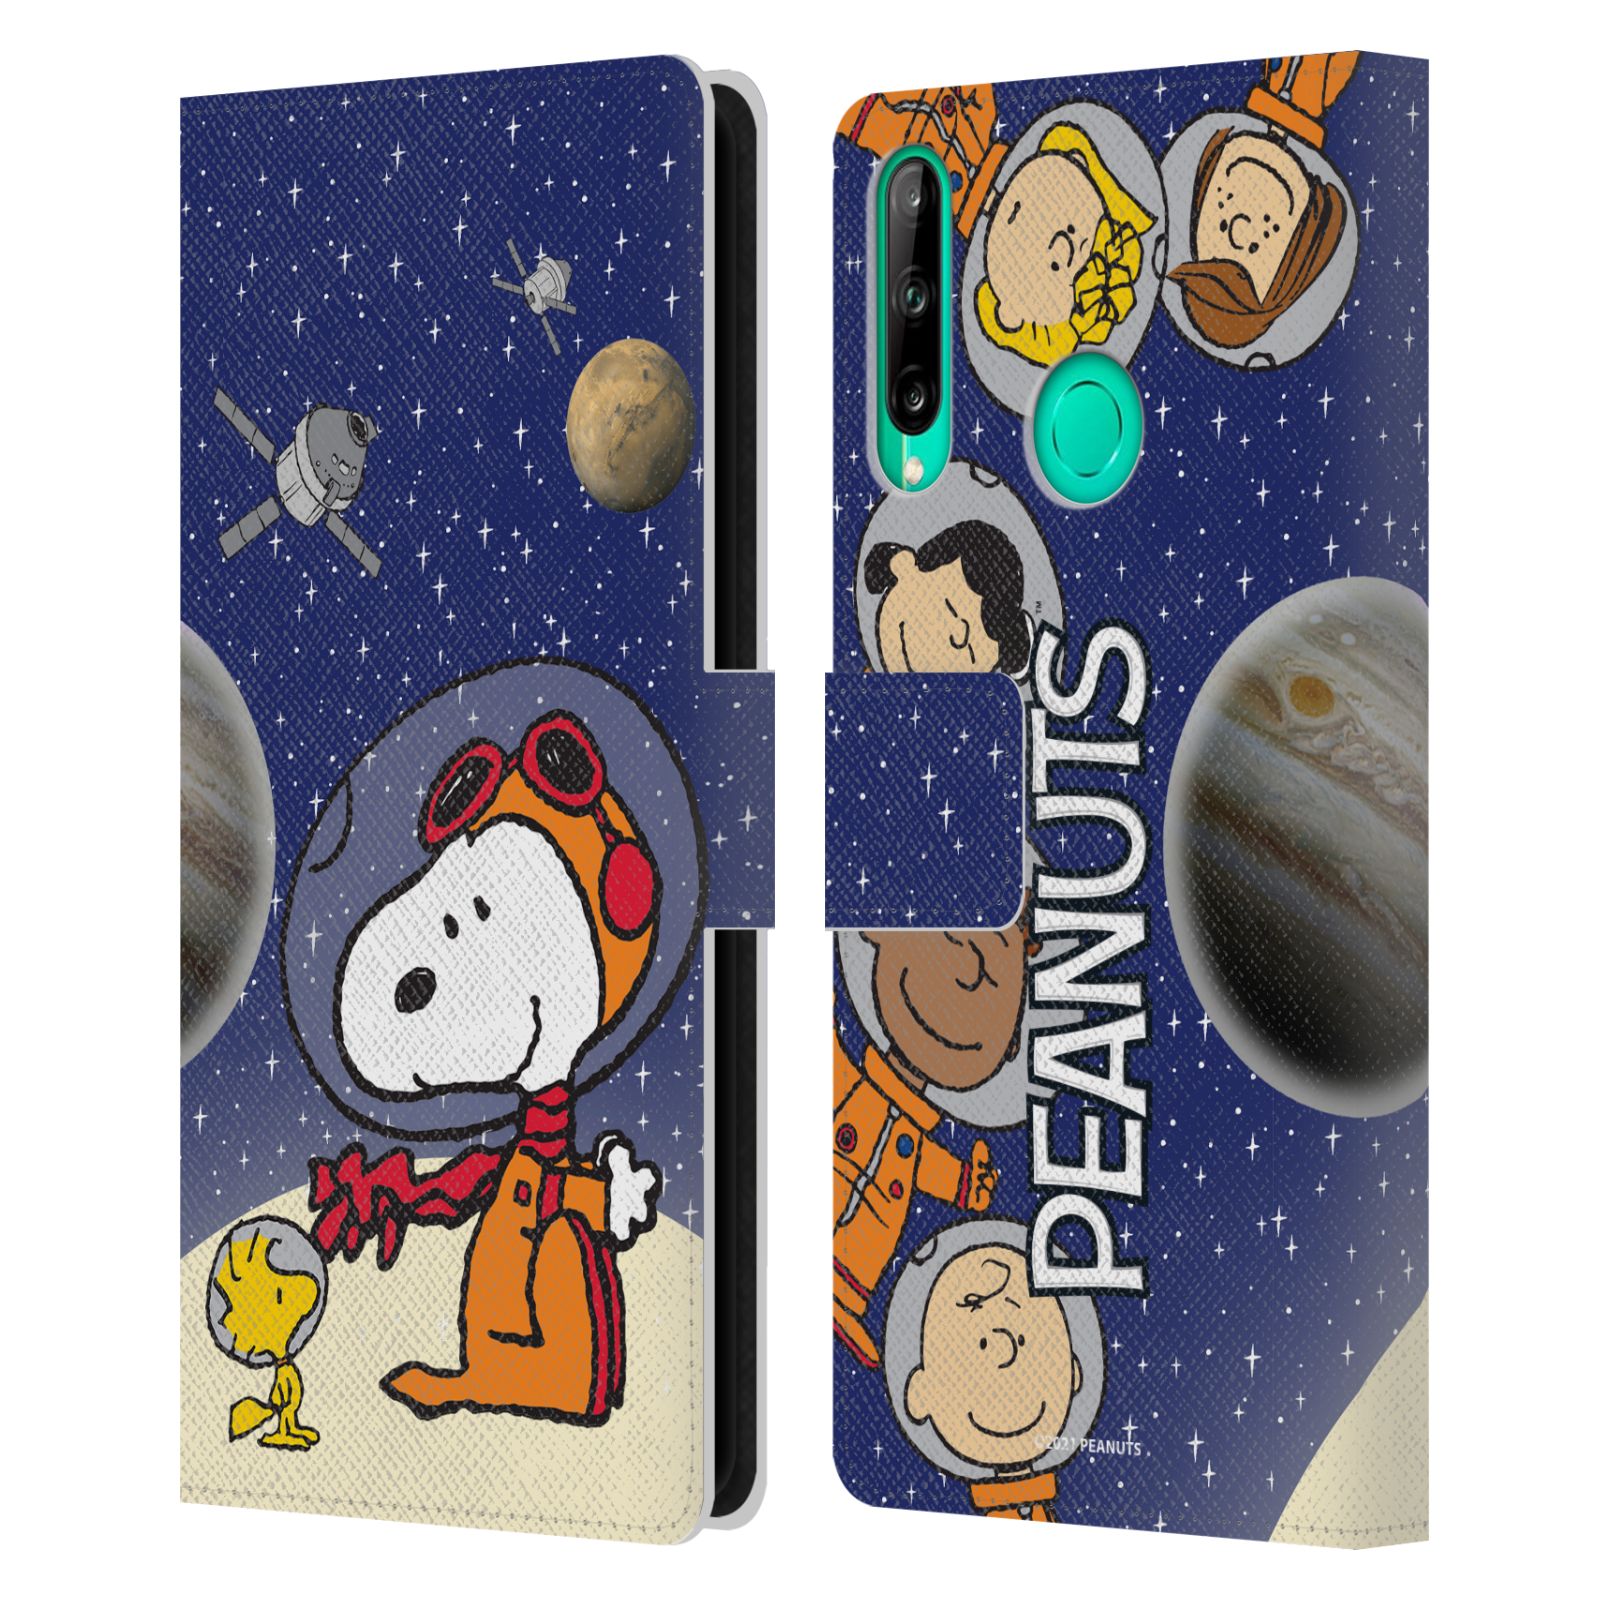 Pouzdro na mobil Huawei P40 LITE E - HEAD CASE - Peanuts Snoopy ve vesmíru 2